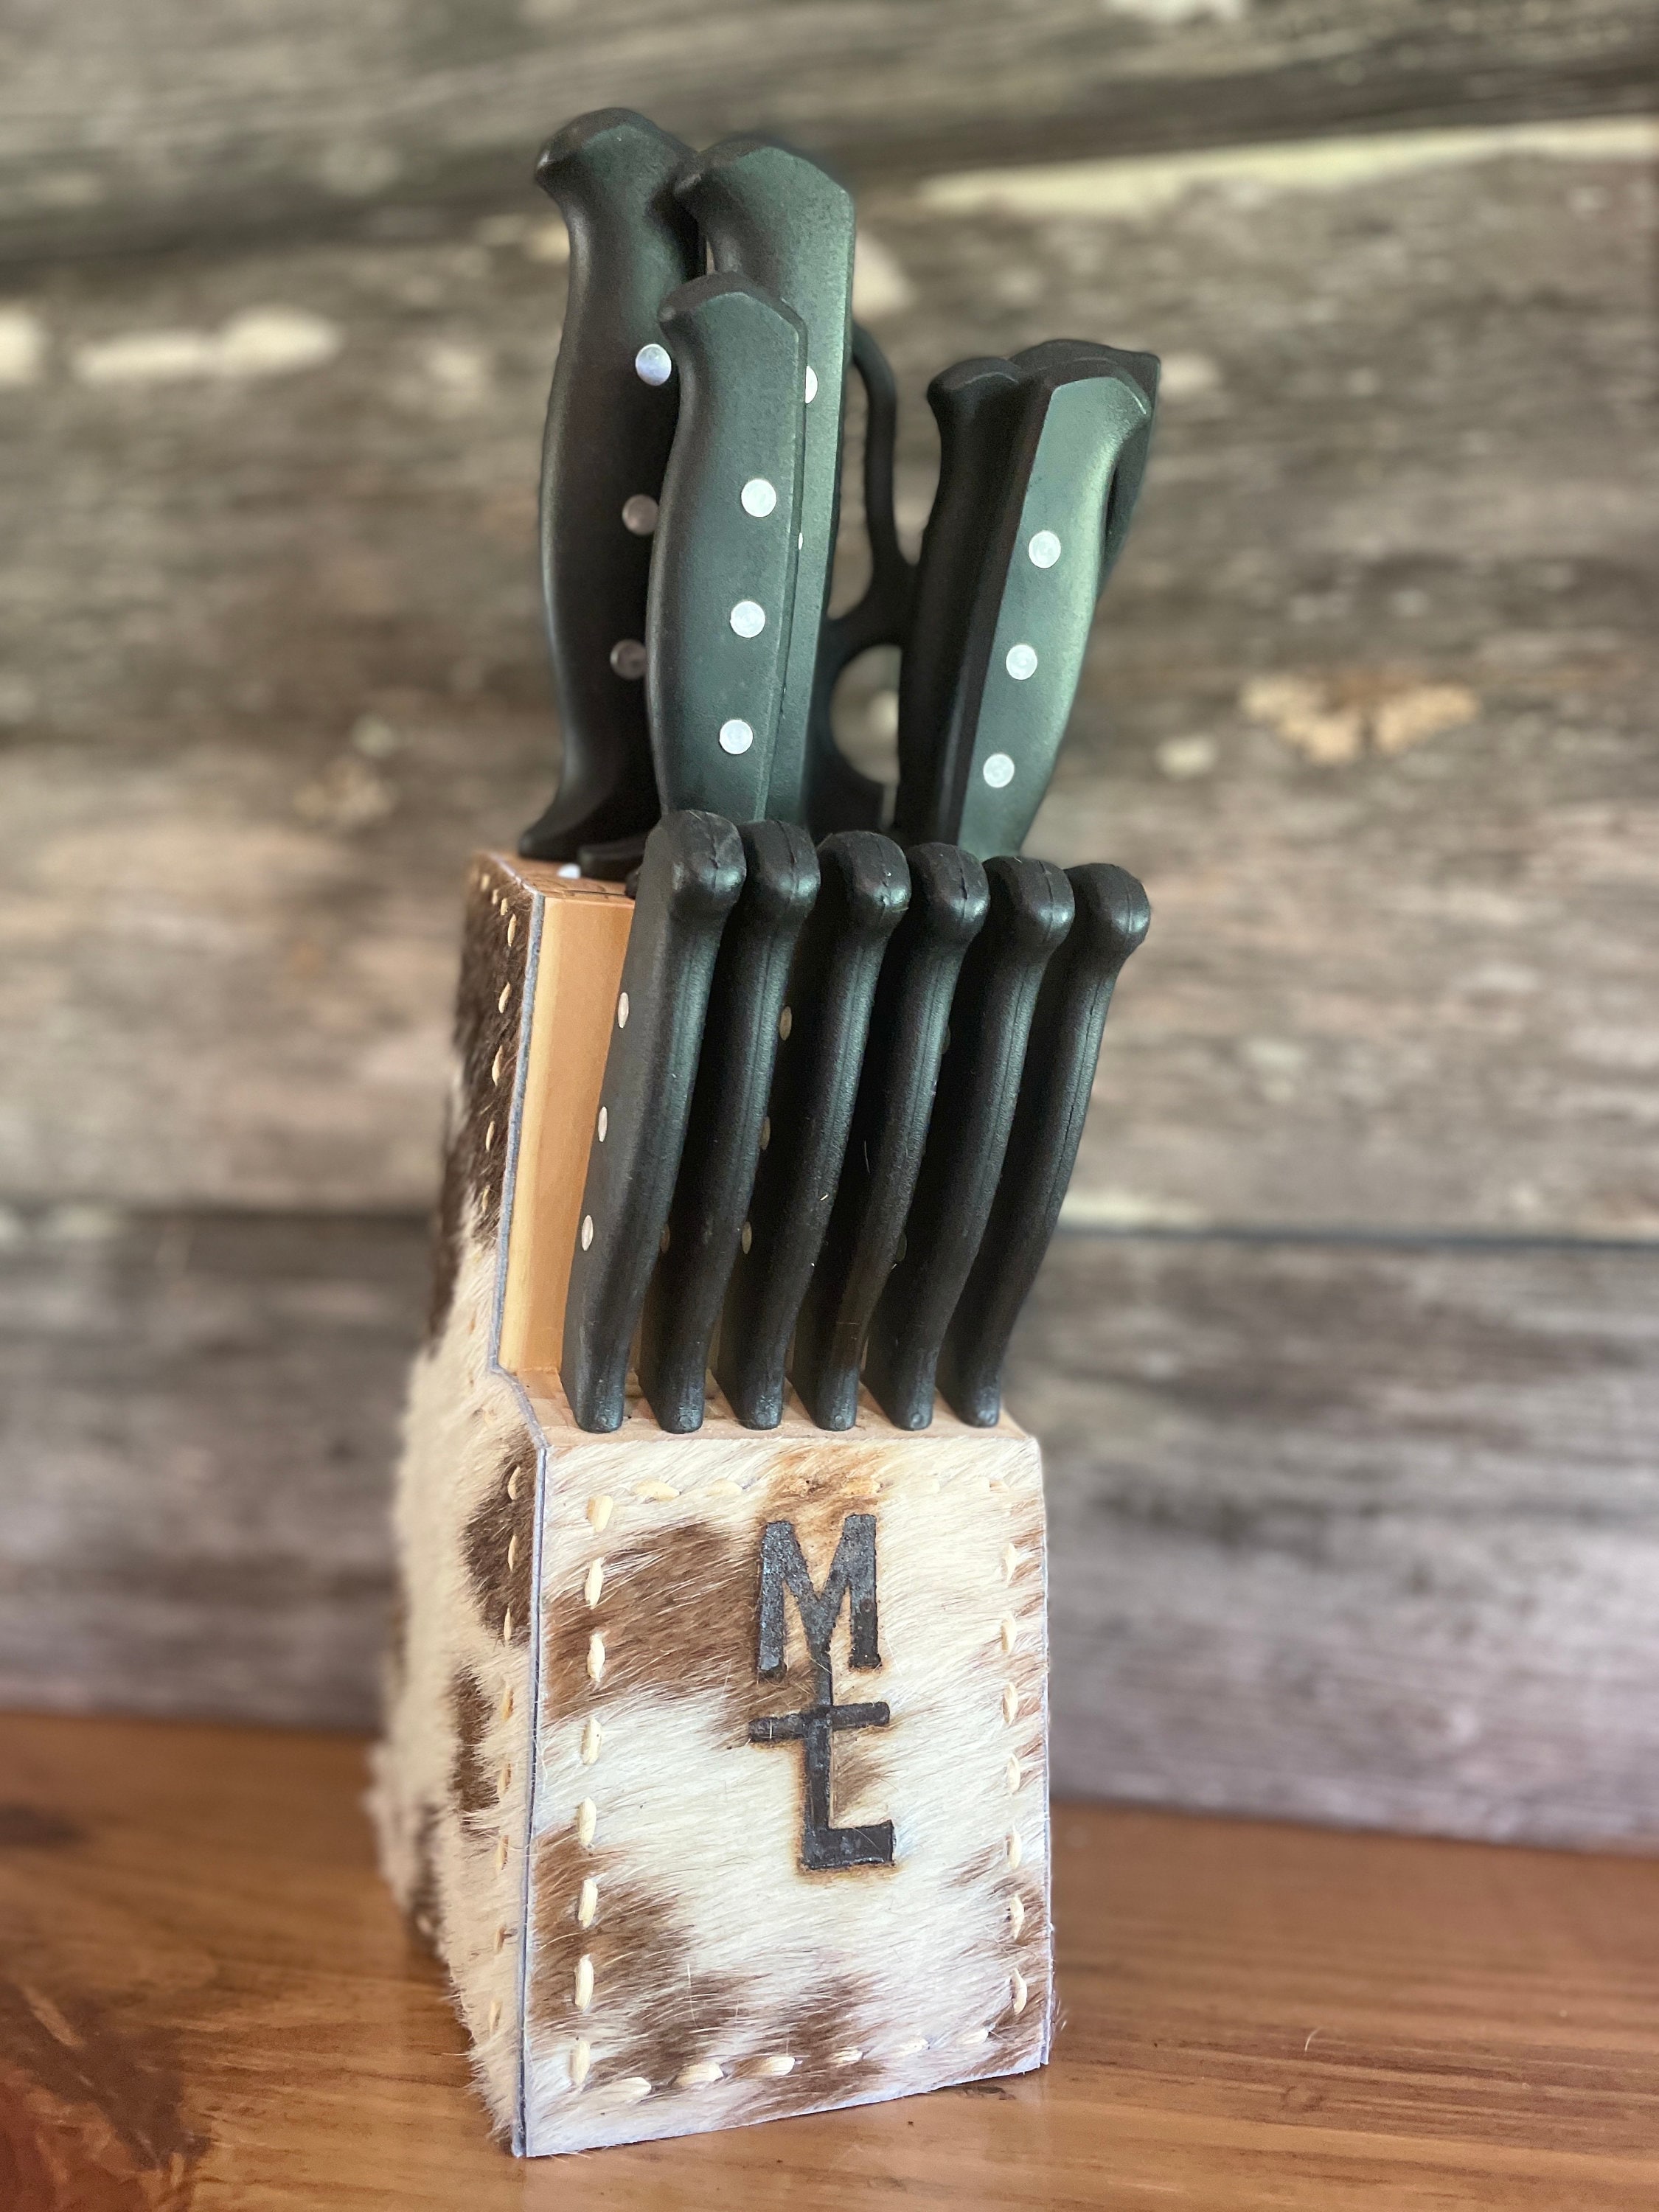 Personalized Wooden Knife Block - Including Knife Set - Engraved (Left Side)